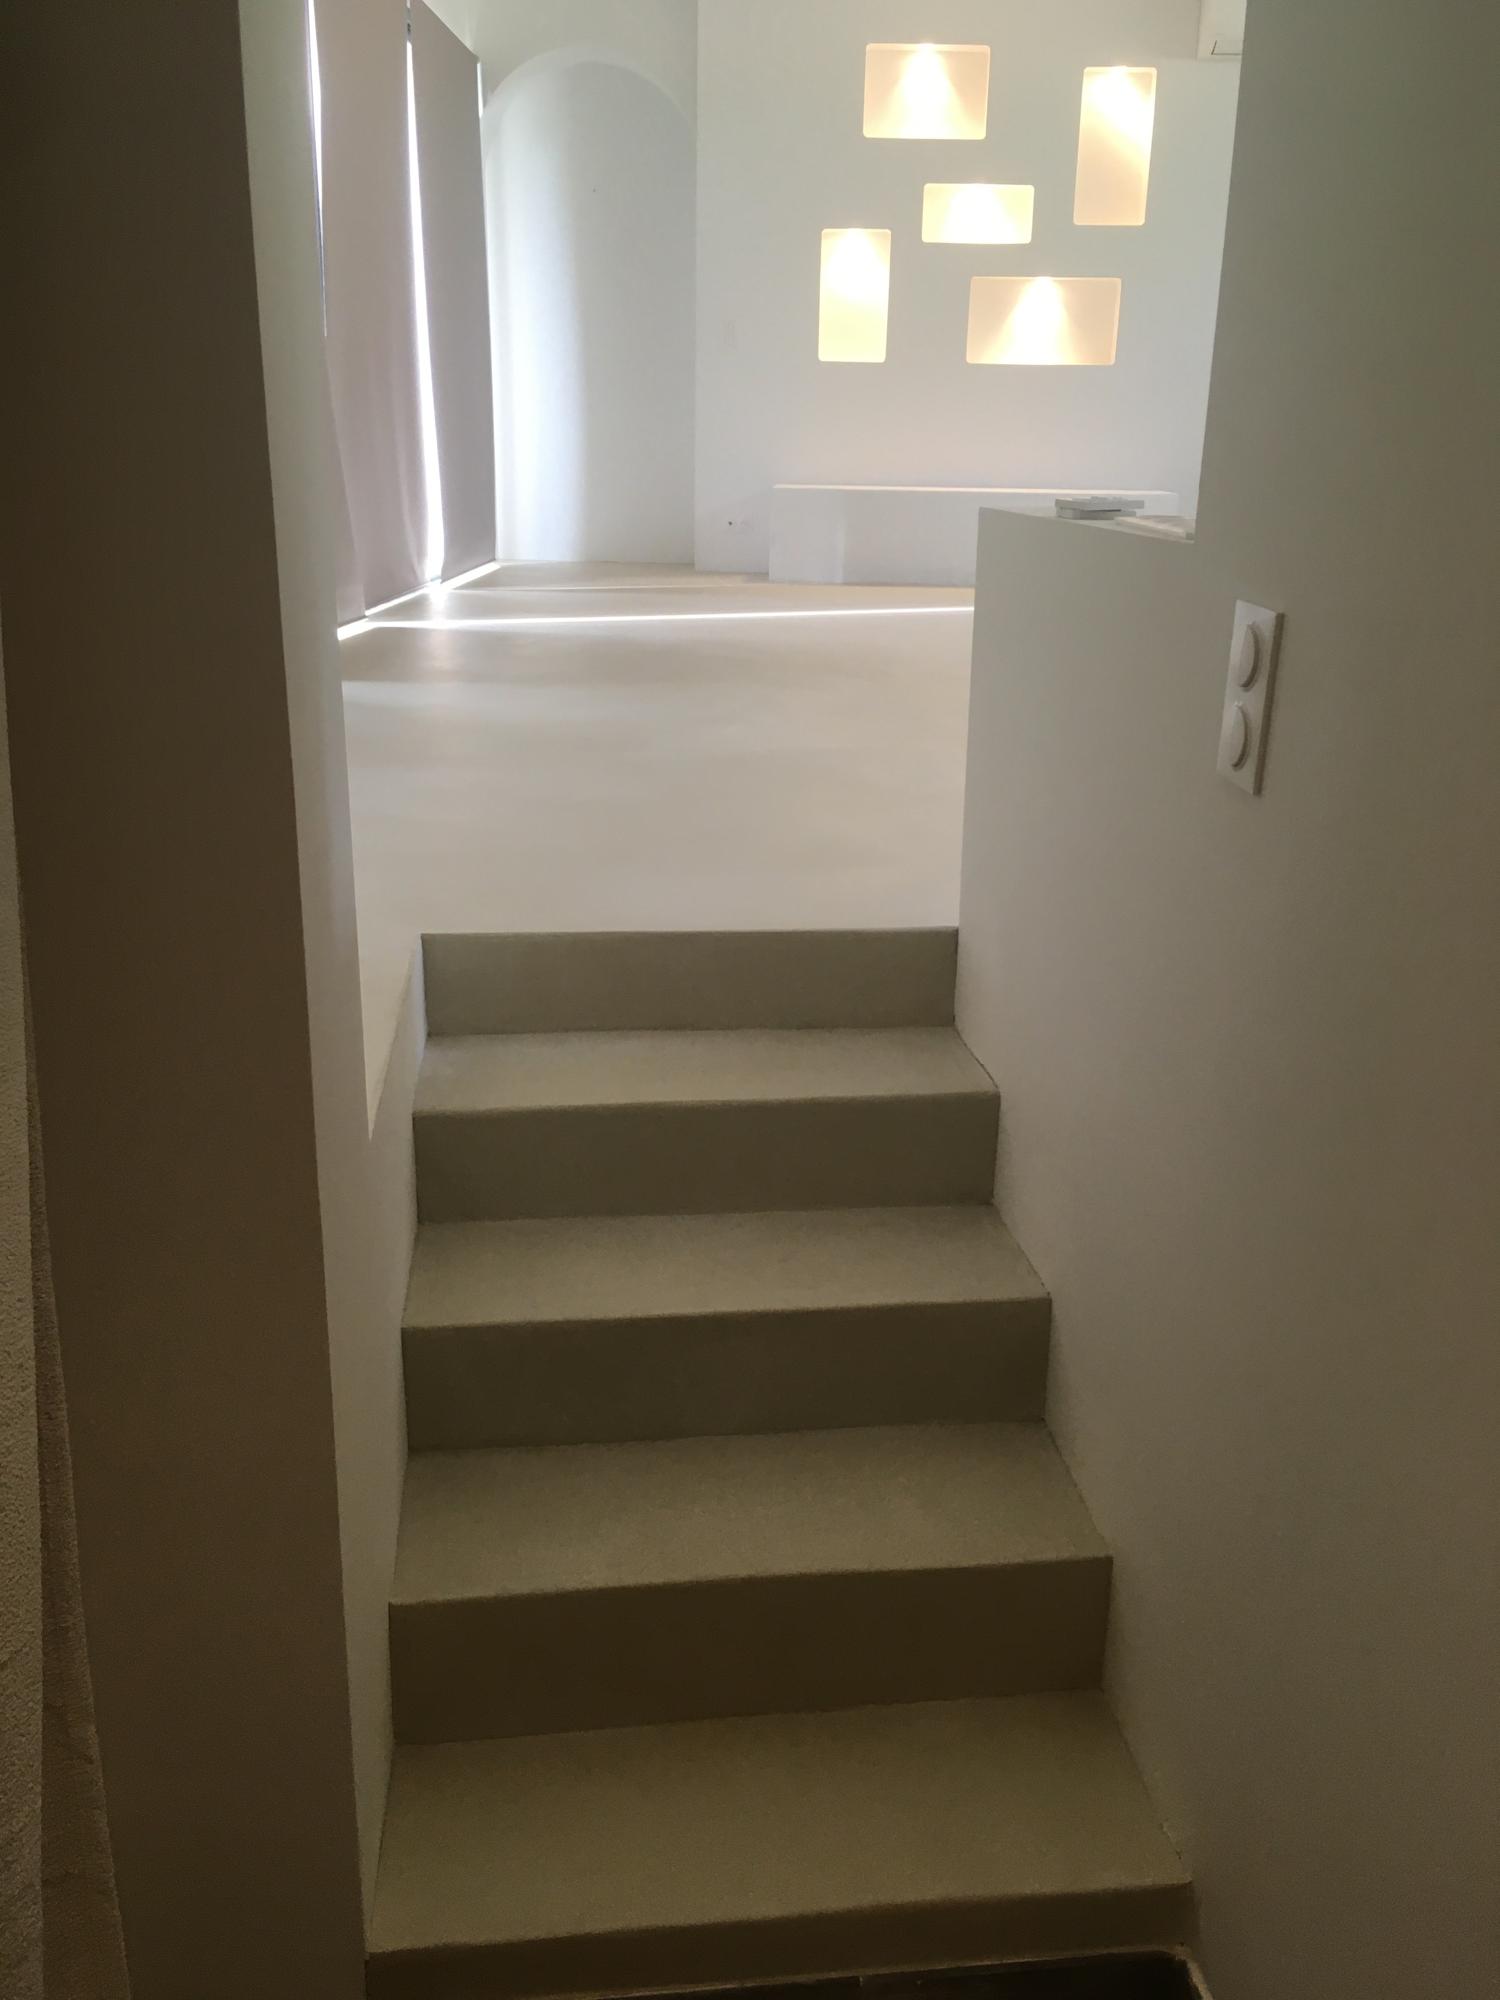 escalier et sol cuisine loft beton cire bandol